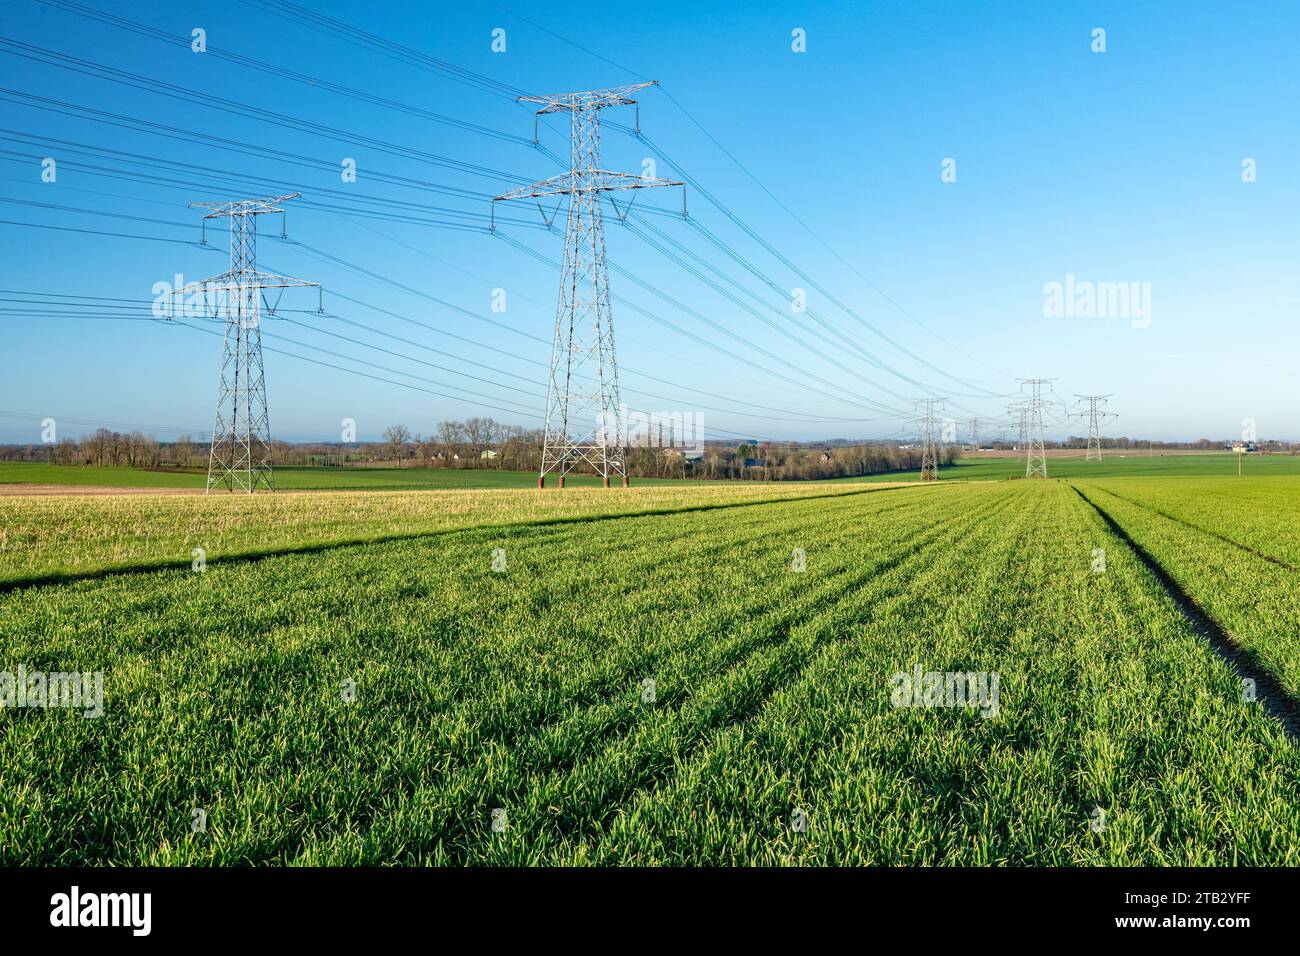 Pylônes haute tension EDF au-dessus d'un champ de blé dans le département de la Seine-Maritime (nord de la France) Banque D'Images